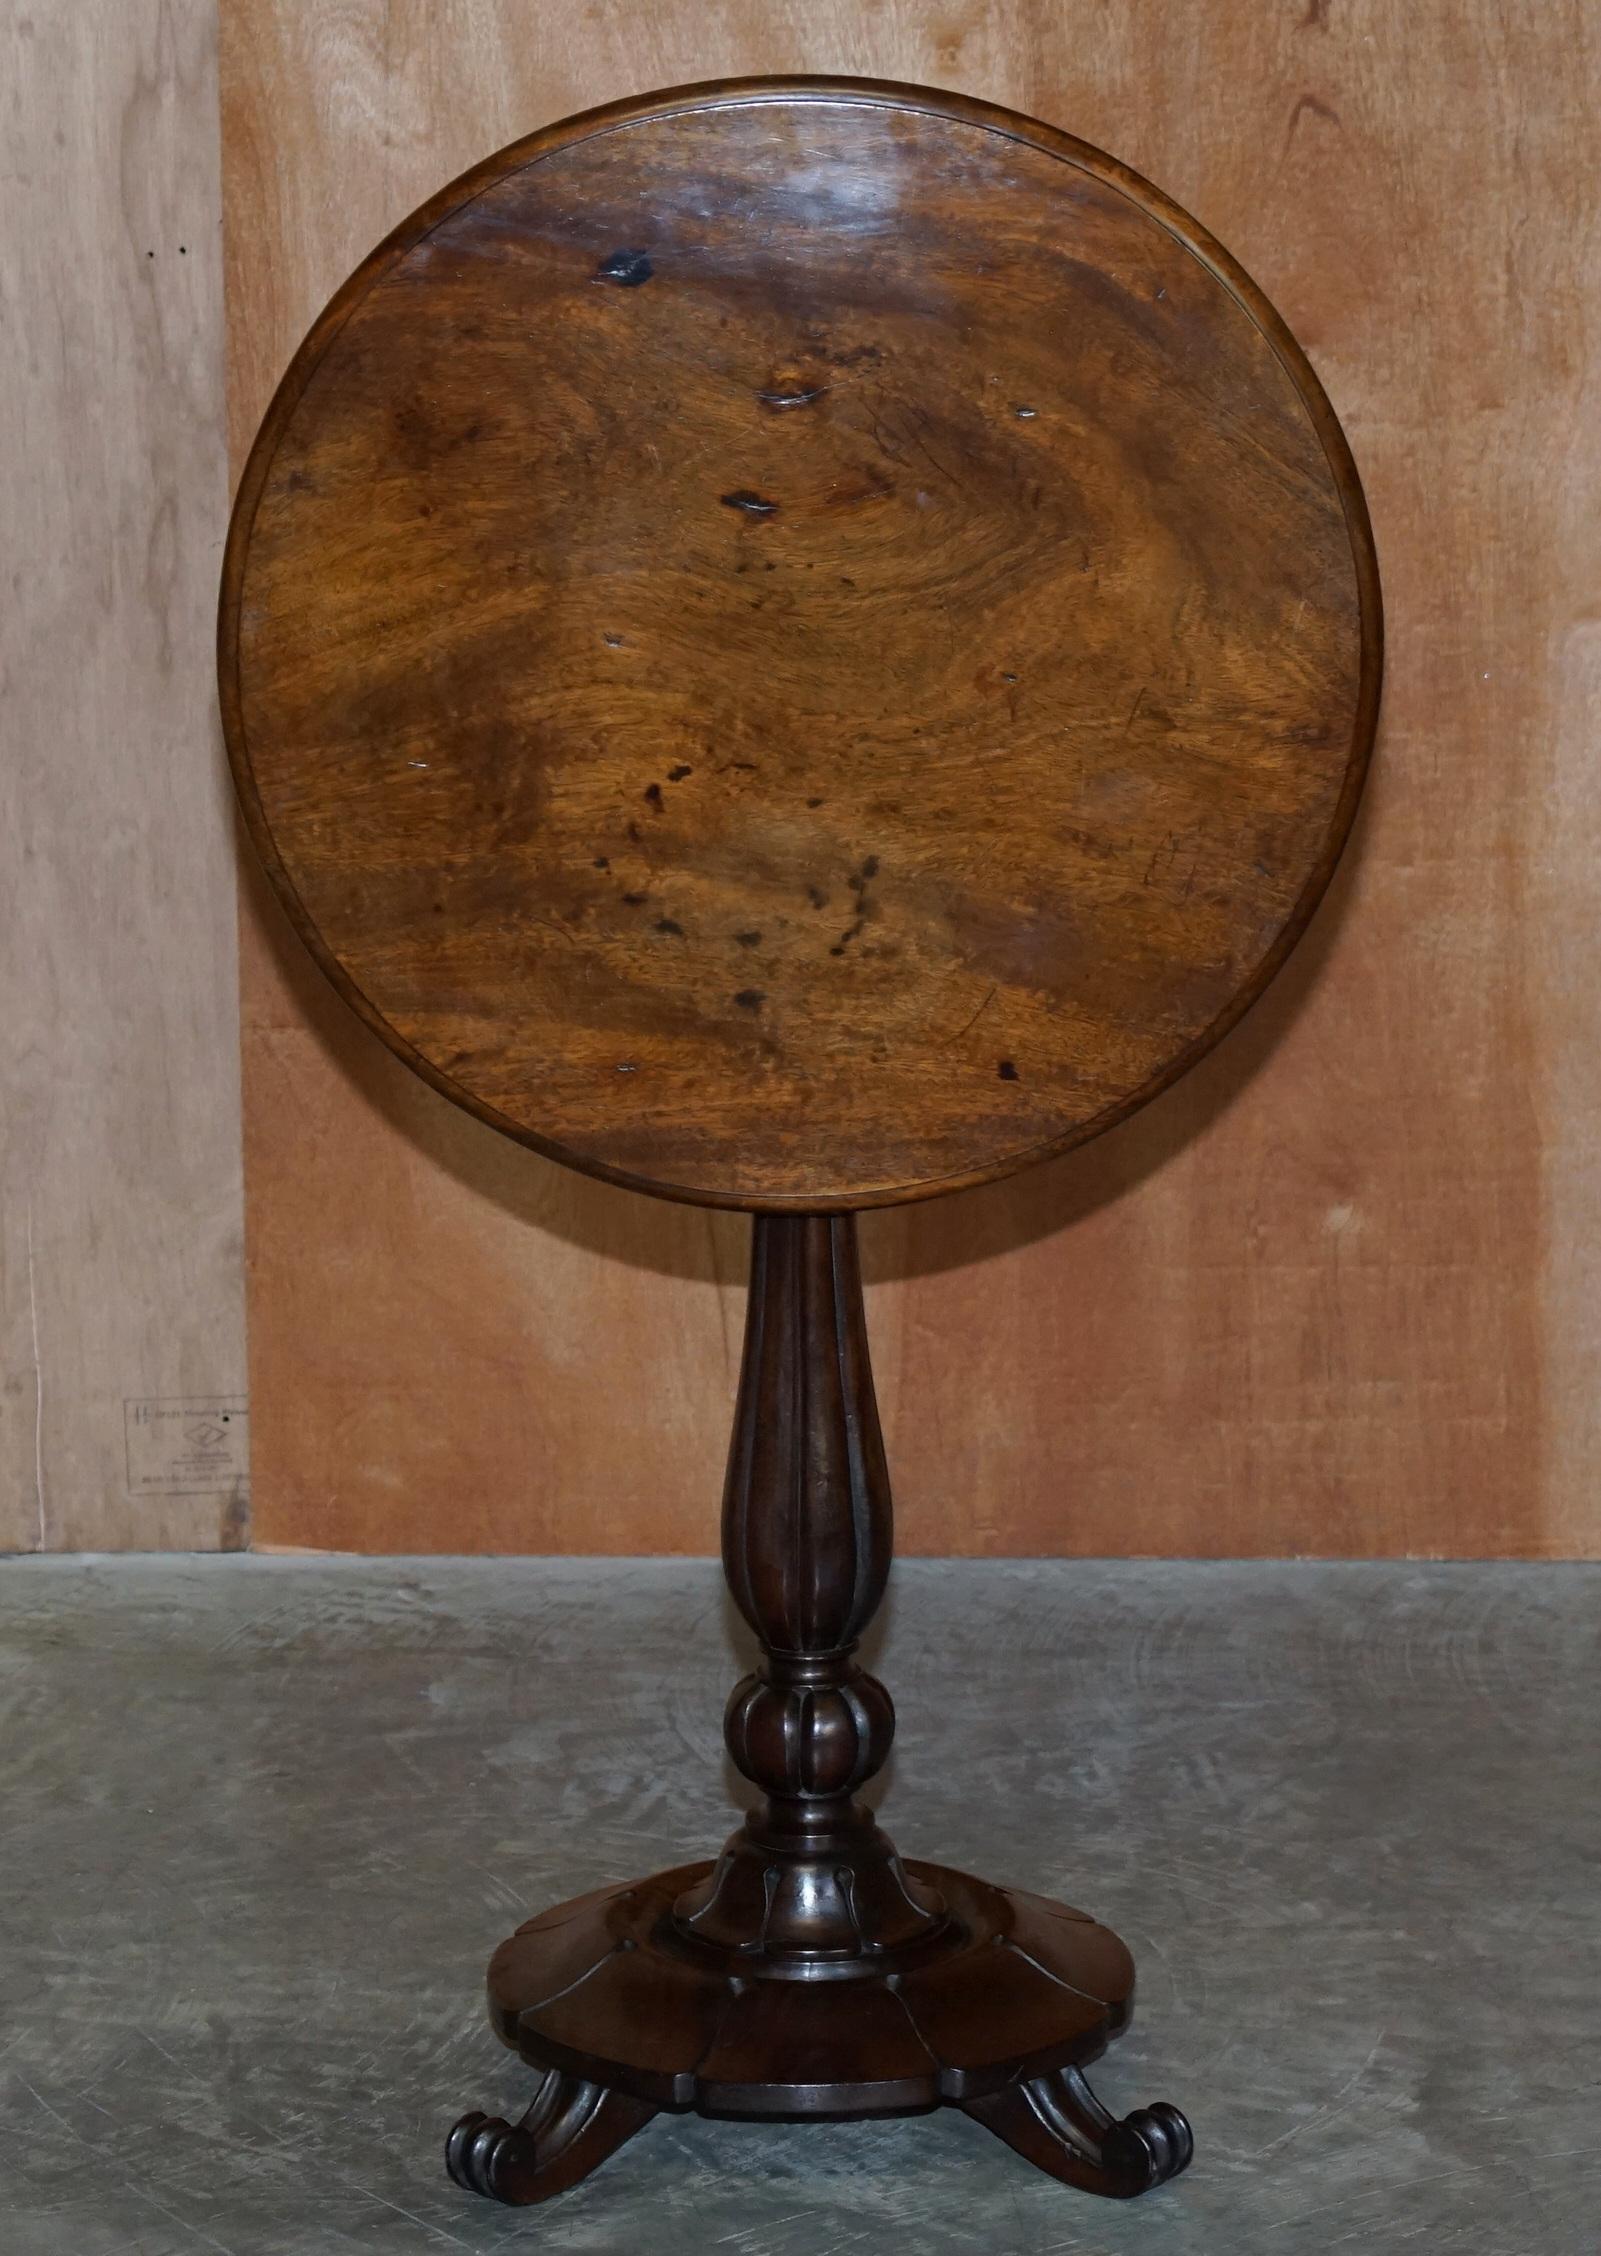 Nous avons le plaisir de proposer à la vente cette belle table à plateau basculant en acajou William IV datant d'environ 1830, avec base à colonne cannelée

Une table d'appoint William IV merveilleusement décorative et super originale. Cette pièce